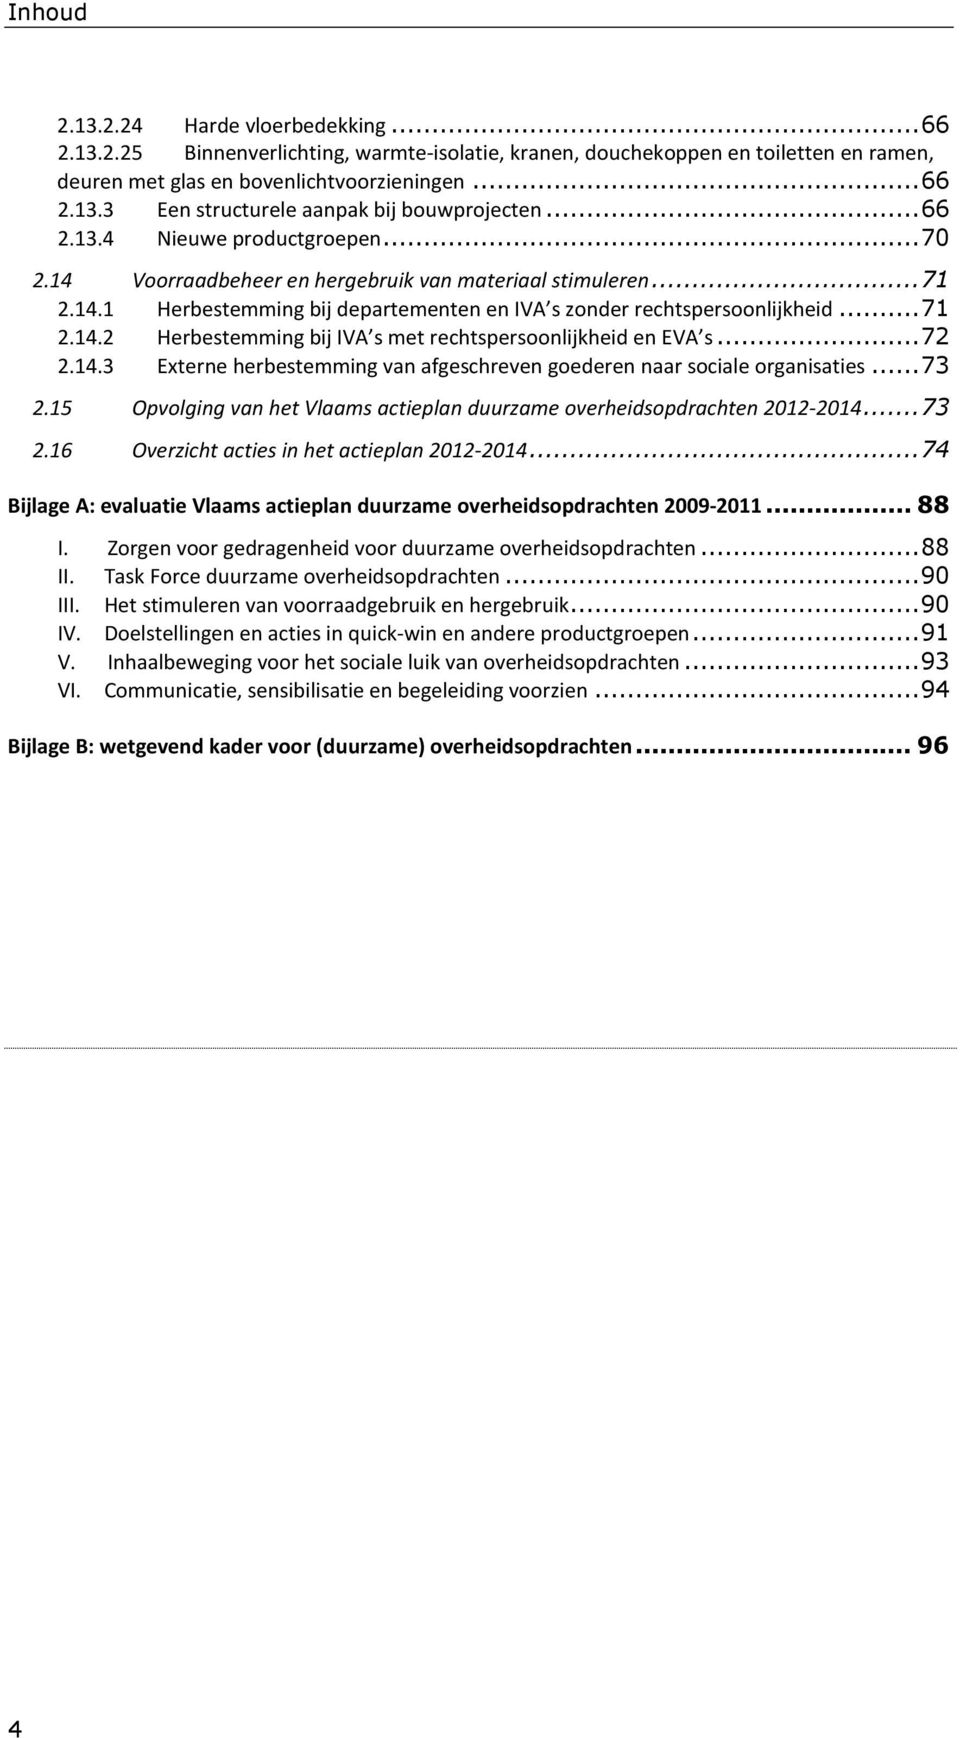 .. 72 2.14.3 Externe herbestemming van afgeschreven goederen naar sociale organisaties... 73 2.15 Opvolging van het Vlaams actieplan duurzame overheidsopdrachten 2012-2014... 73 2.16 Overzicht acties in het actieplan 2012-2014.